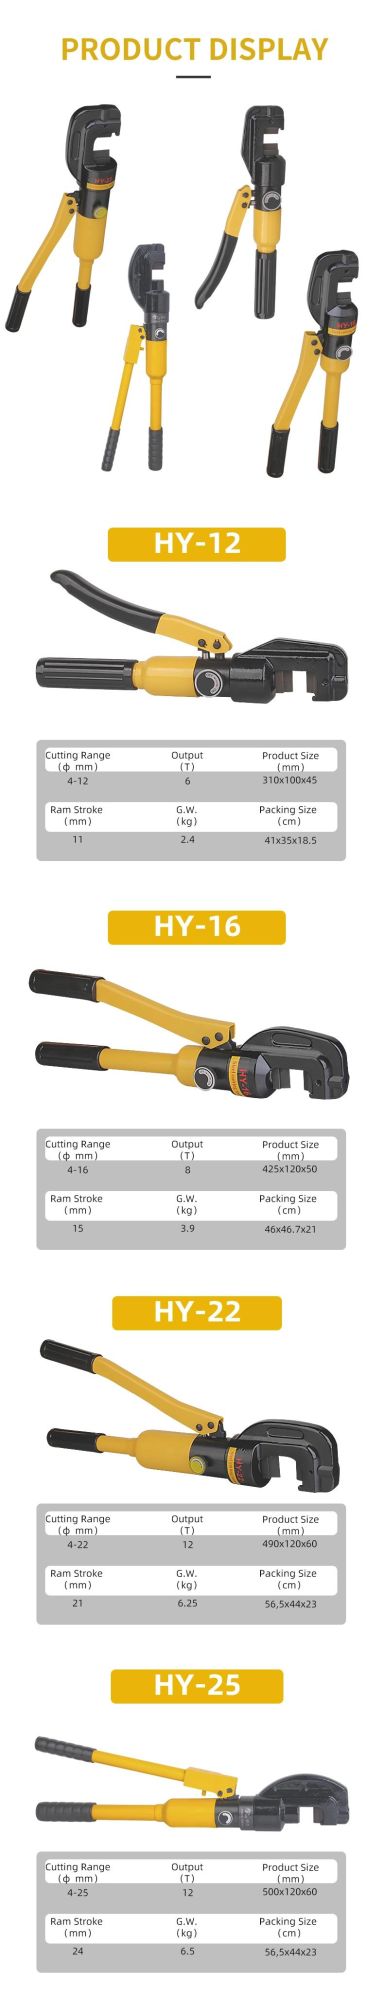 12t 22mm Hydraulic Steel Bar Cutting Tool (HY-22)